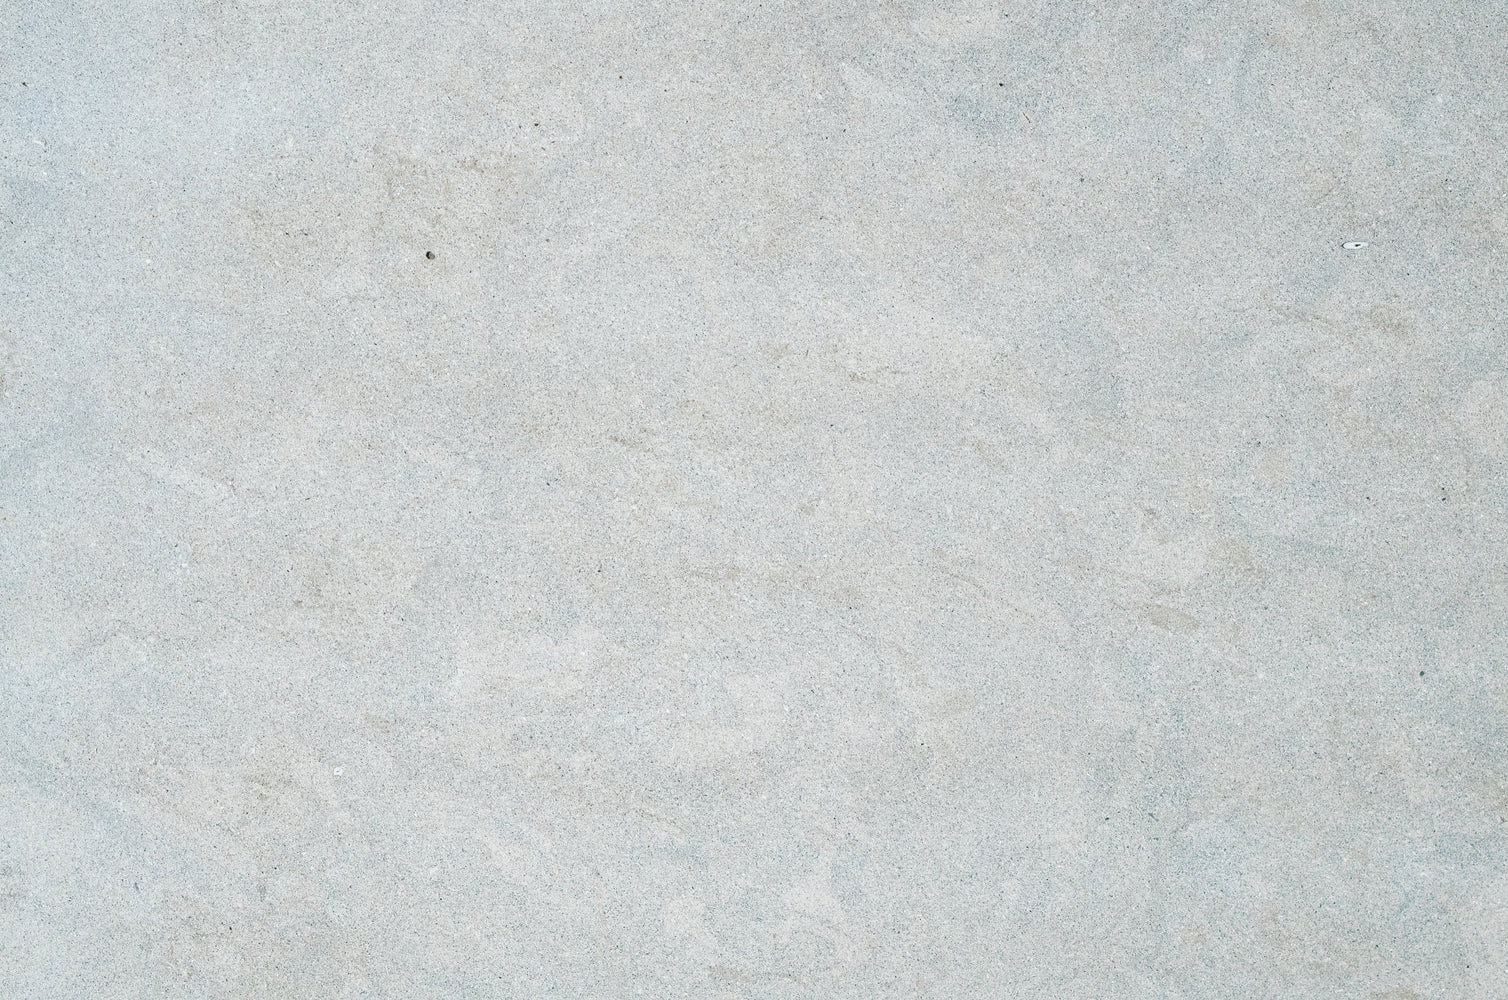 Full Tile Sample - Bateig Blue Sandstone Tile - 12" x 12" x 5/8" Honed